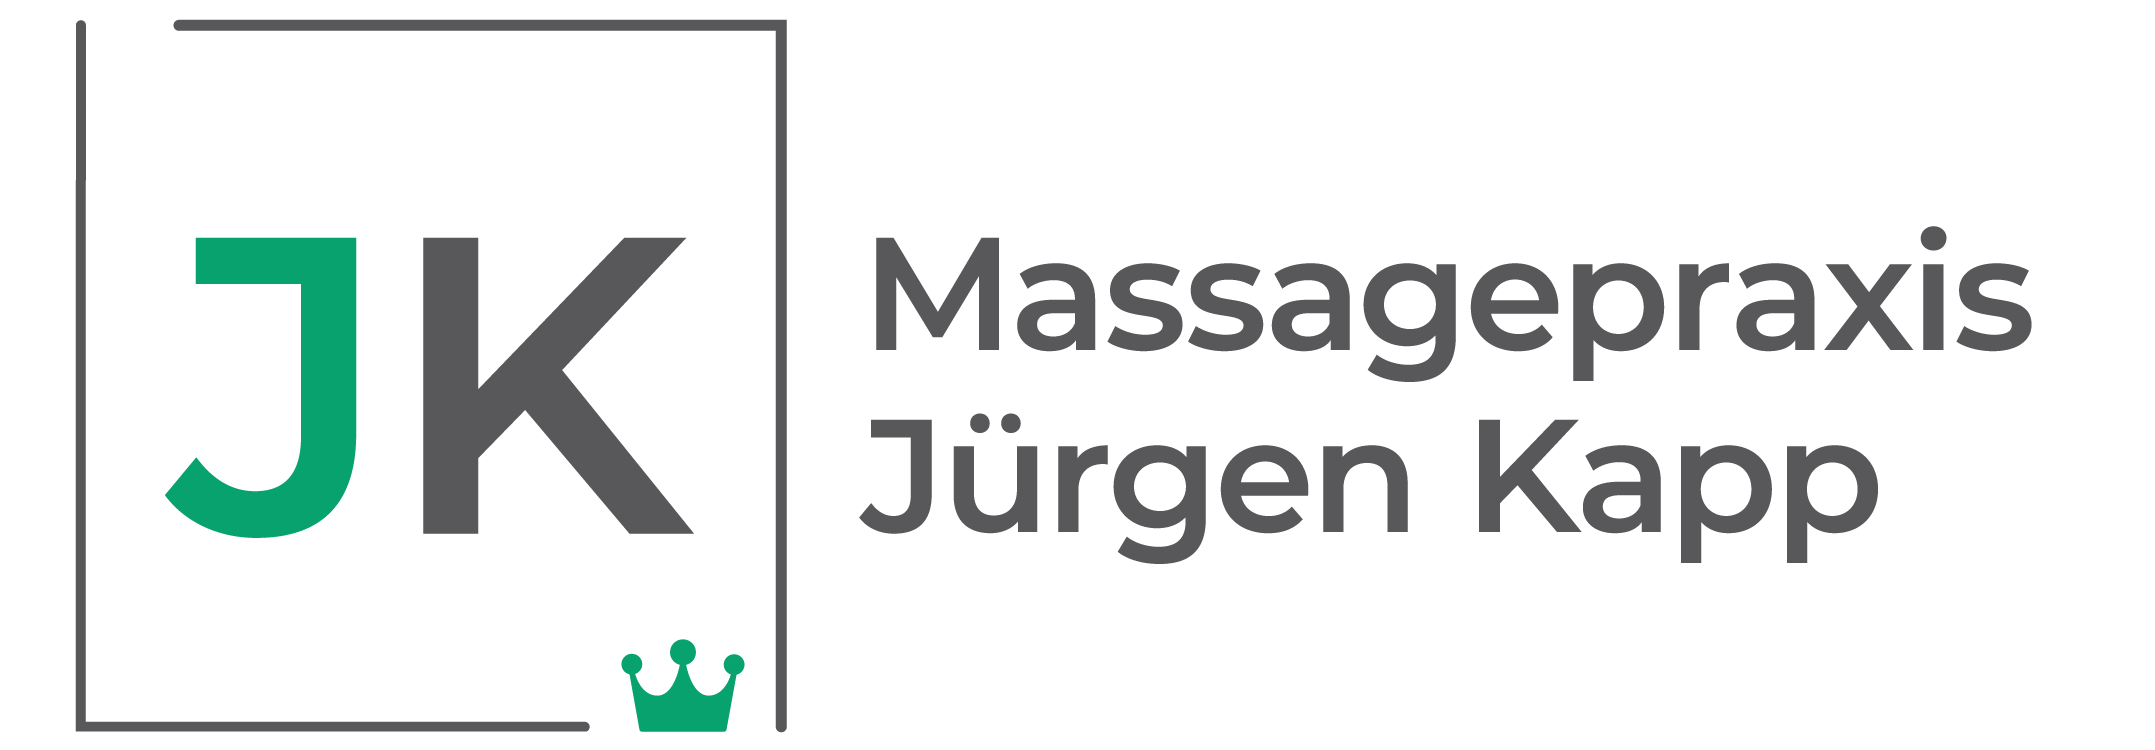 Massagepraxis-Kapp Logo